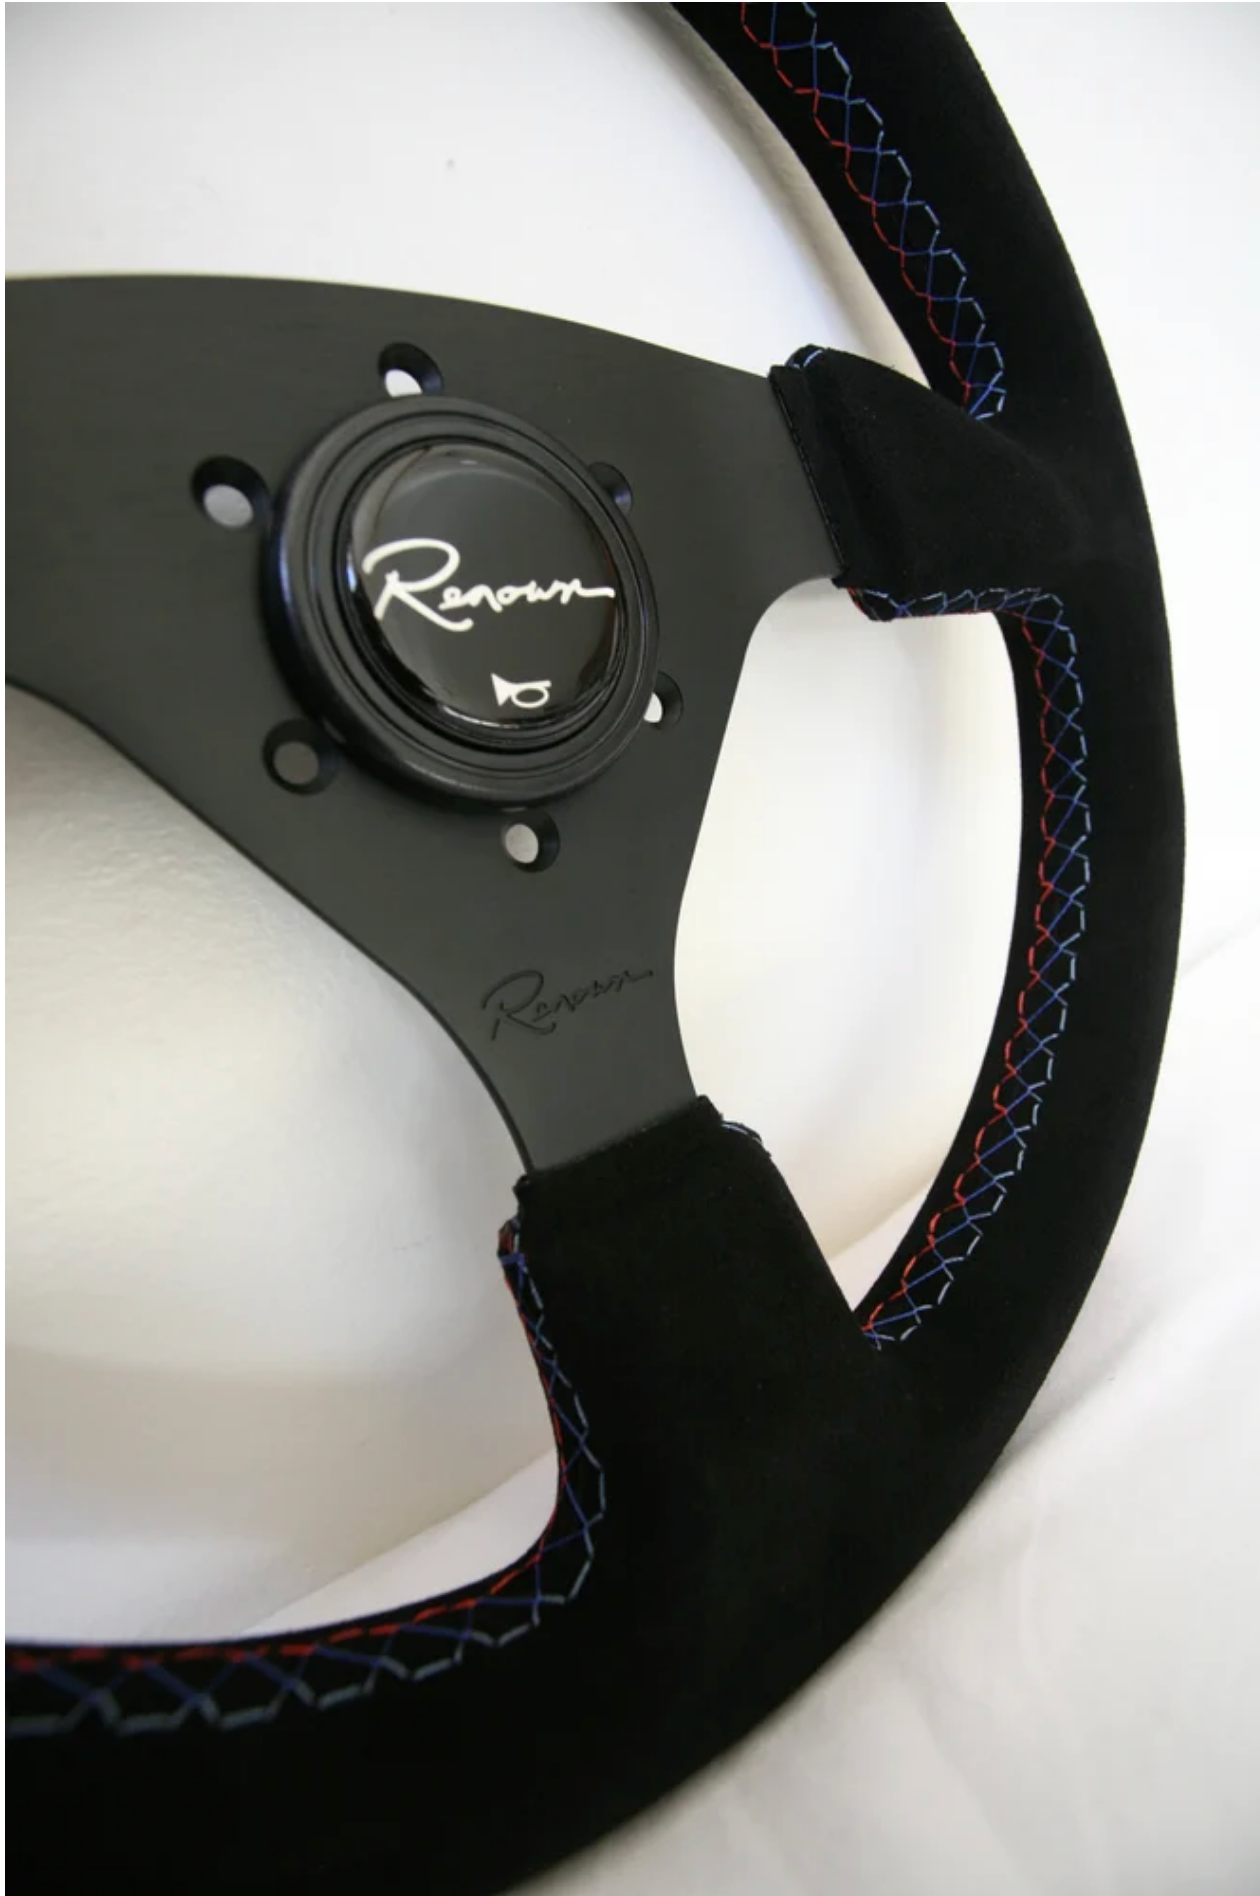 Renown Clubsport Motorsport Steering Wheel